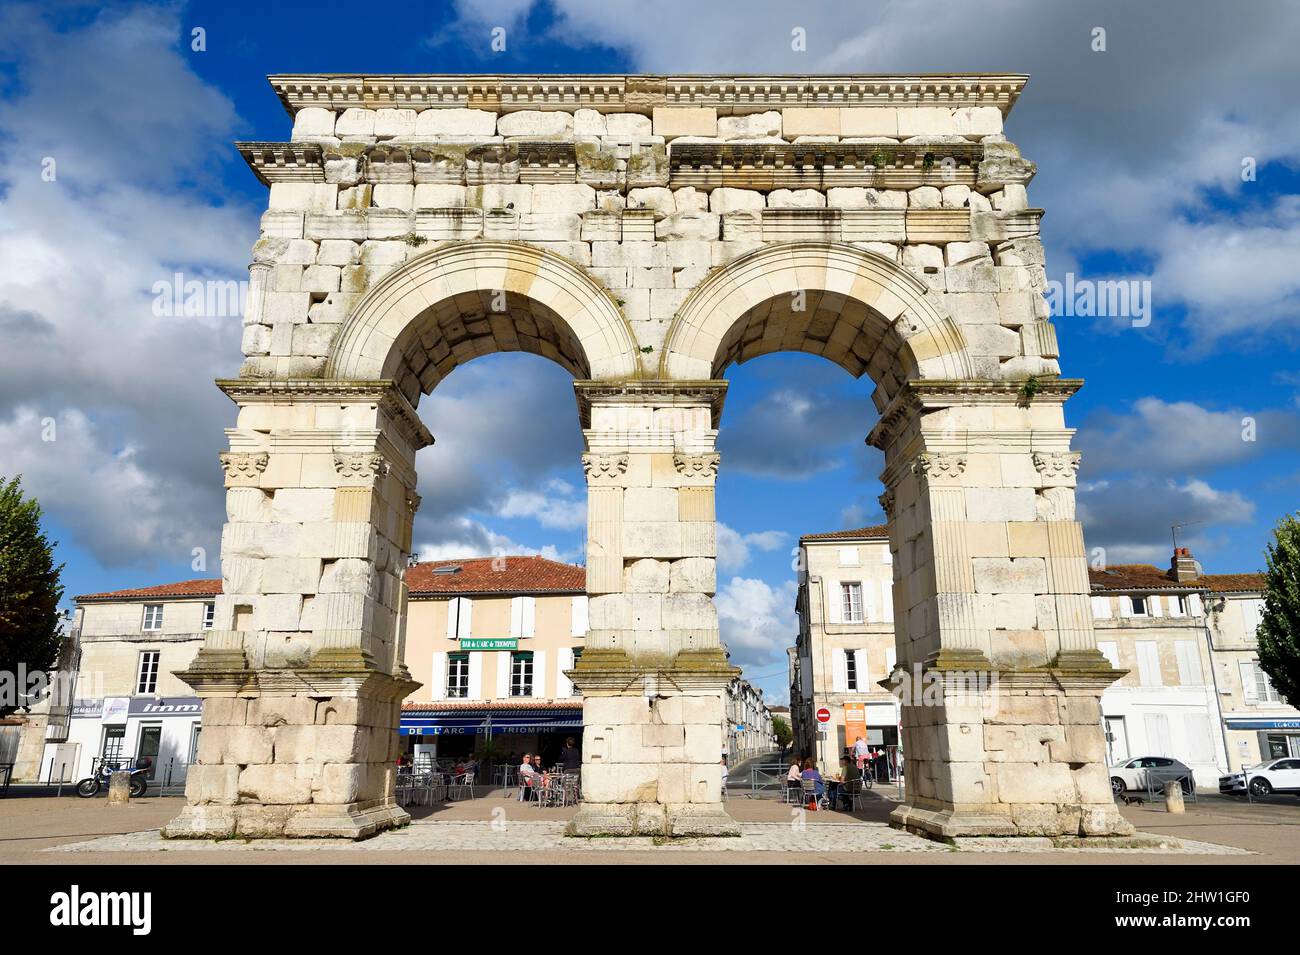 Francia, Charente-Maritime, Saintonge, Saintes, el arco de Germánico es un arco de carretera en el borde del río Charente erigido en el año 18-19 en honor del emperador Tiberio, su hijo Drusus y su sobrino y adoptado hijo Germánico Foto de stock